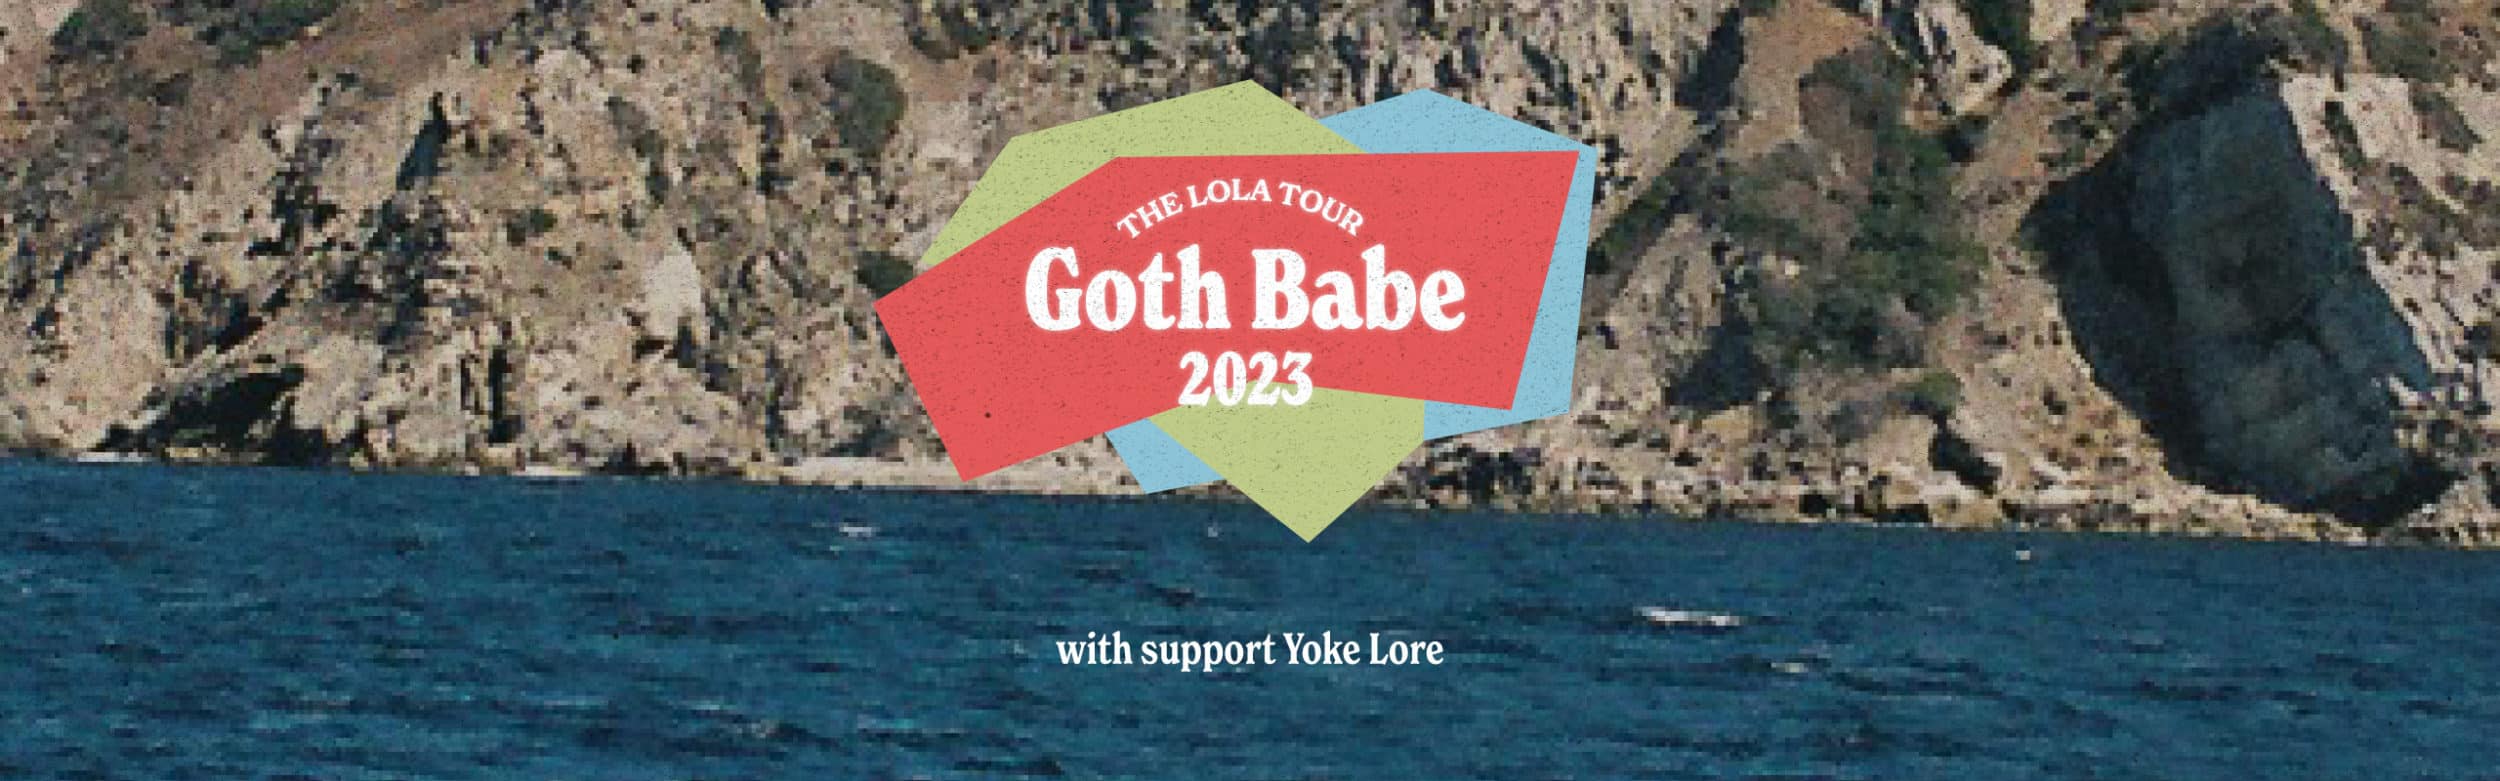 Goth Babe: The Lola Tour